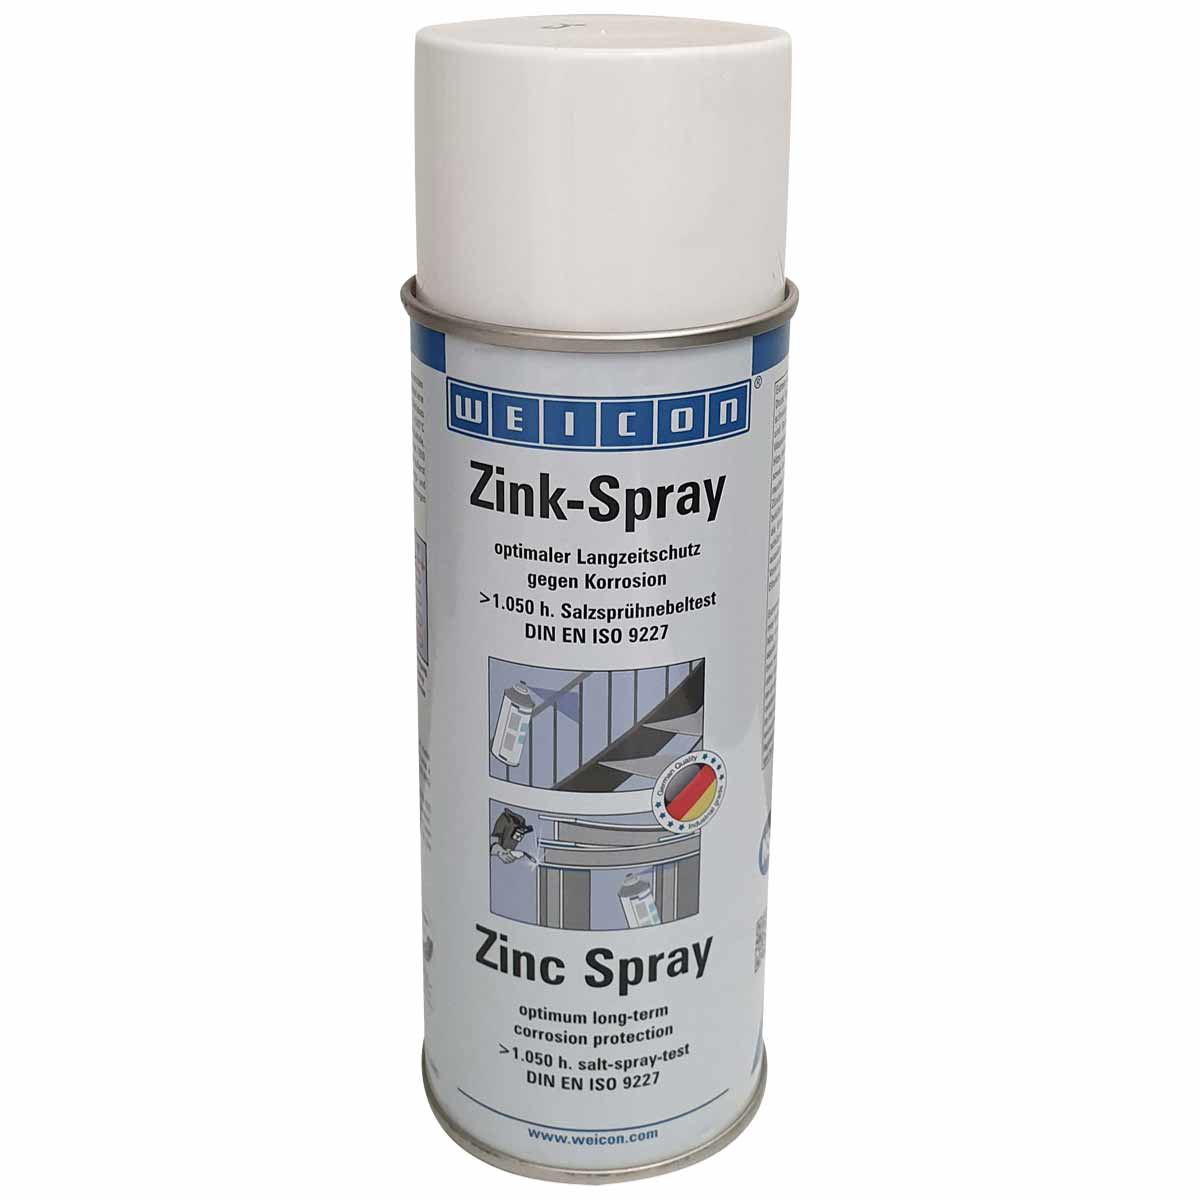 اسپری آبکاری سرد زینک (روی) مات ویکن WEICON Zinc Spray